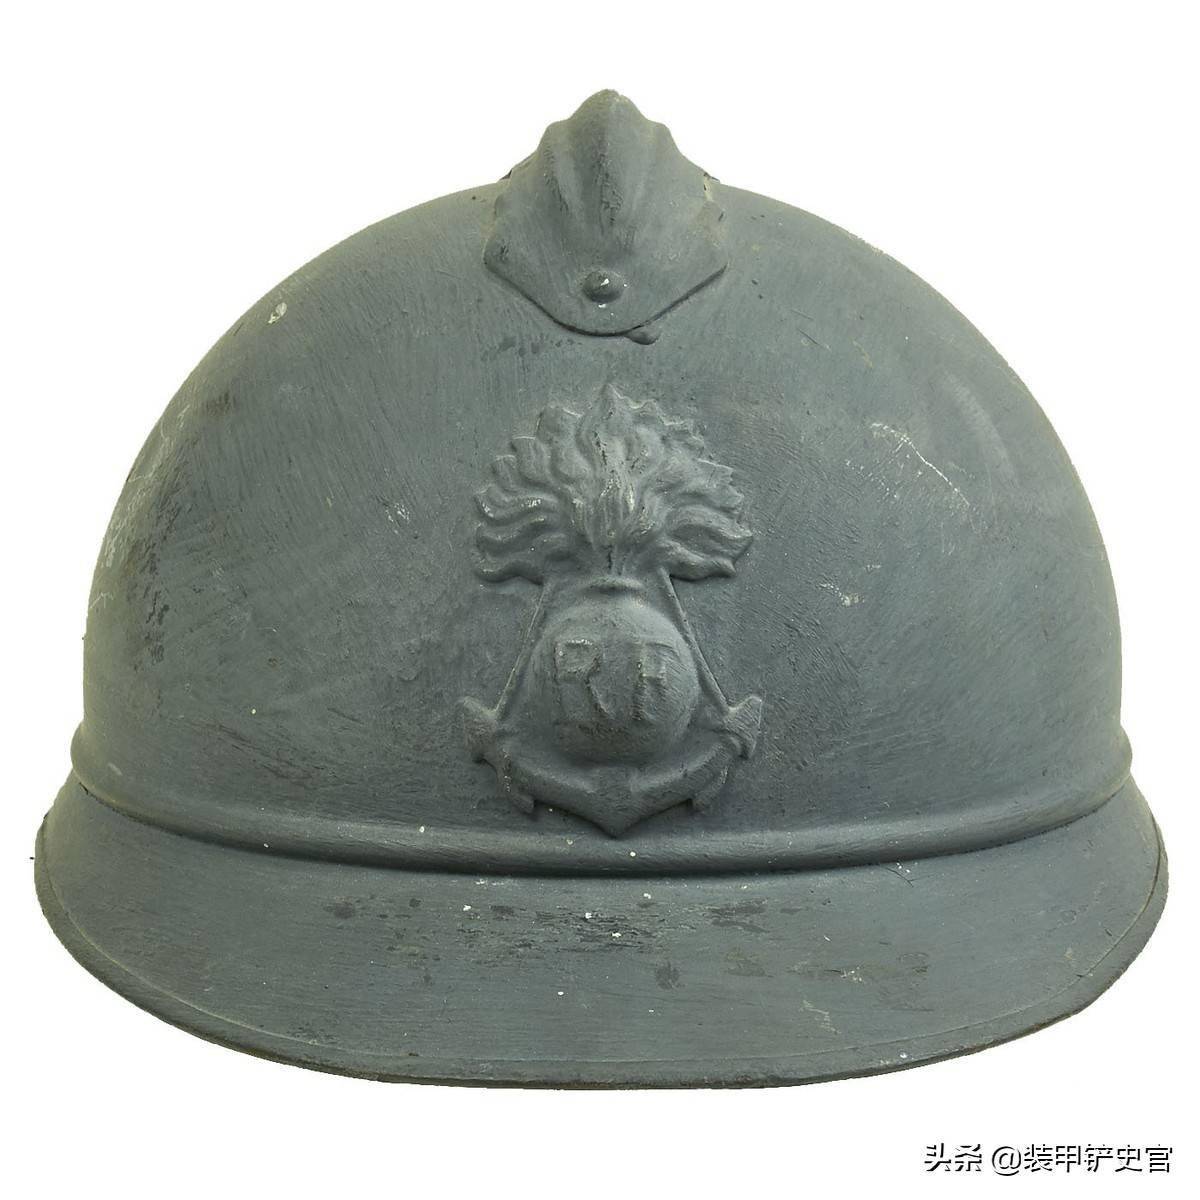 亚德里安1915型钢盔的骑兵帽徽是一副胸甲骑兵的胸甲和头盔